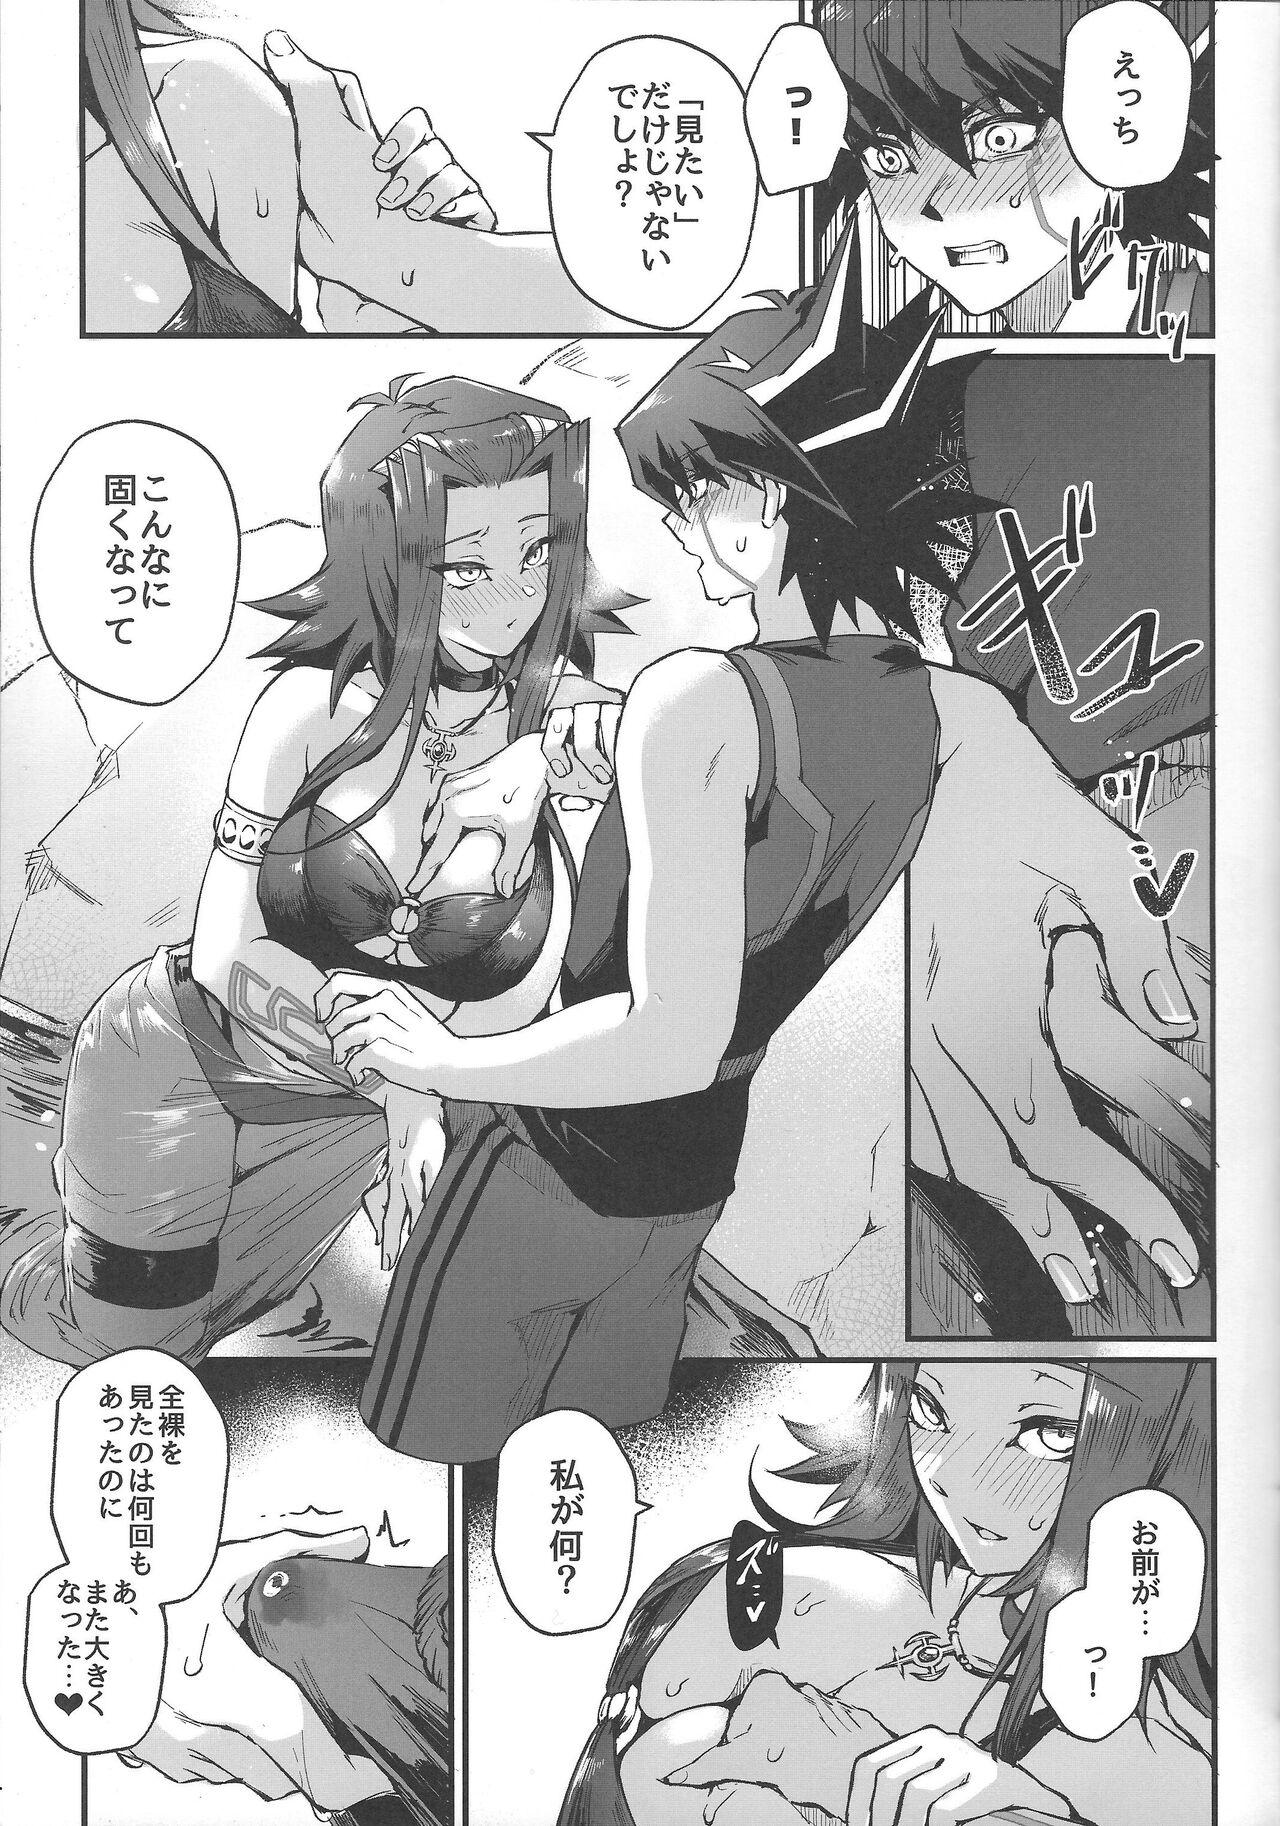 Monster Samakani - Yu gi oh 5ds Gaysex - Page 10